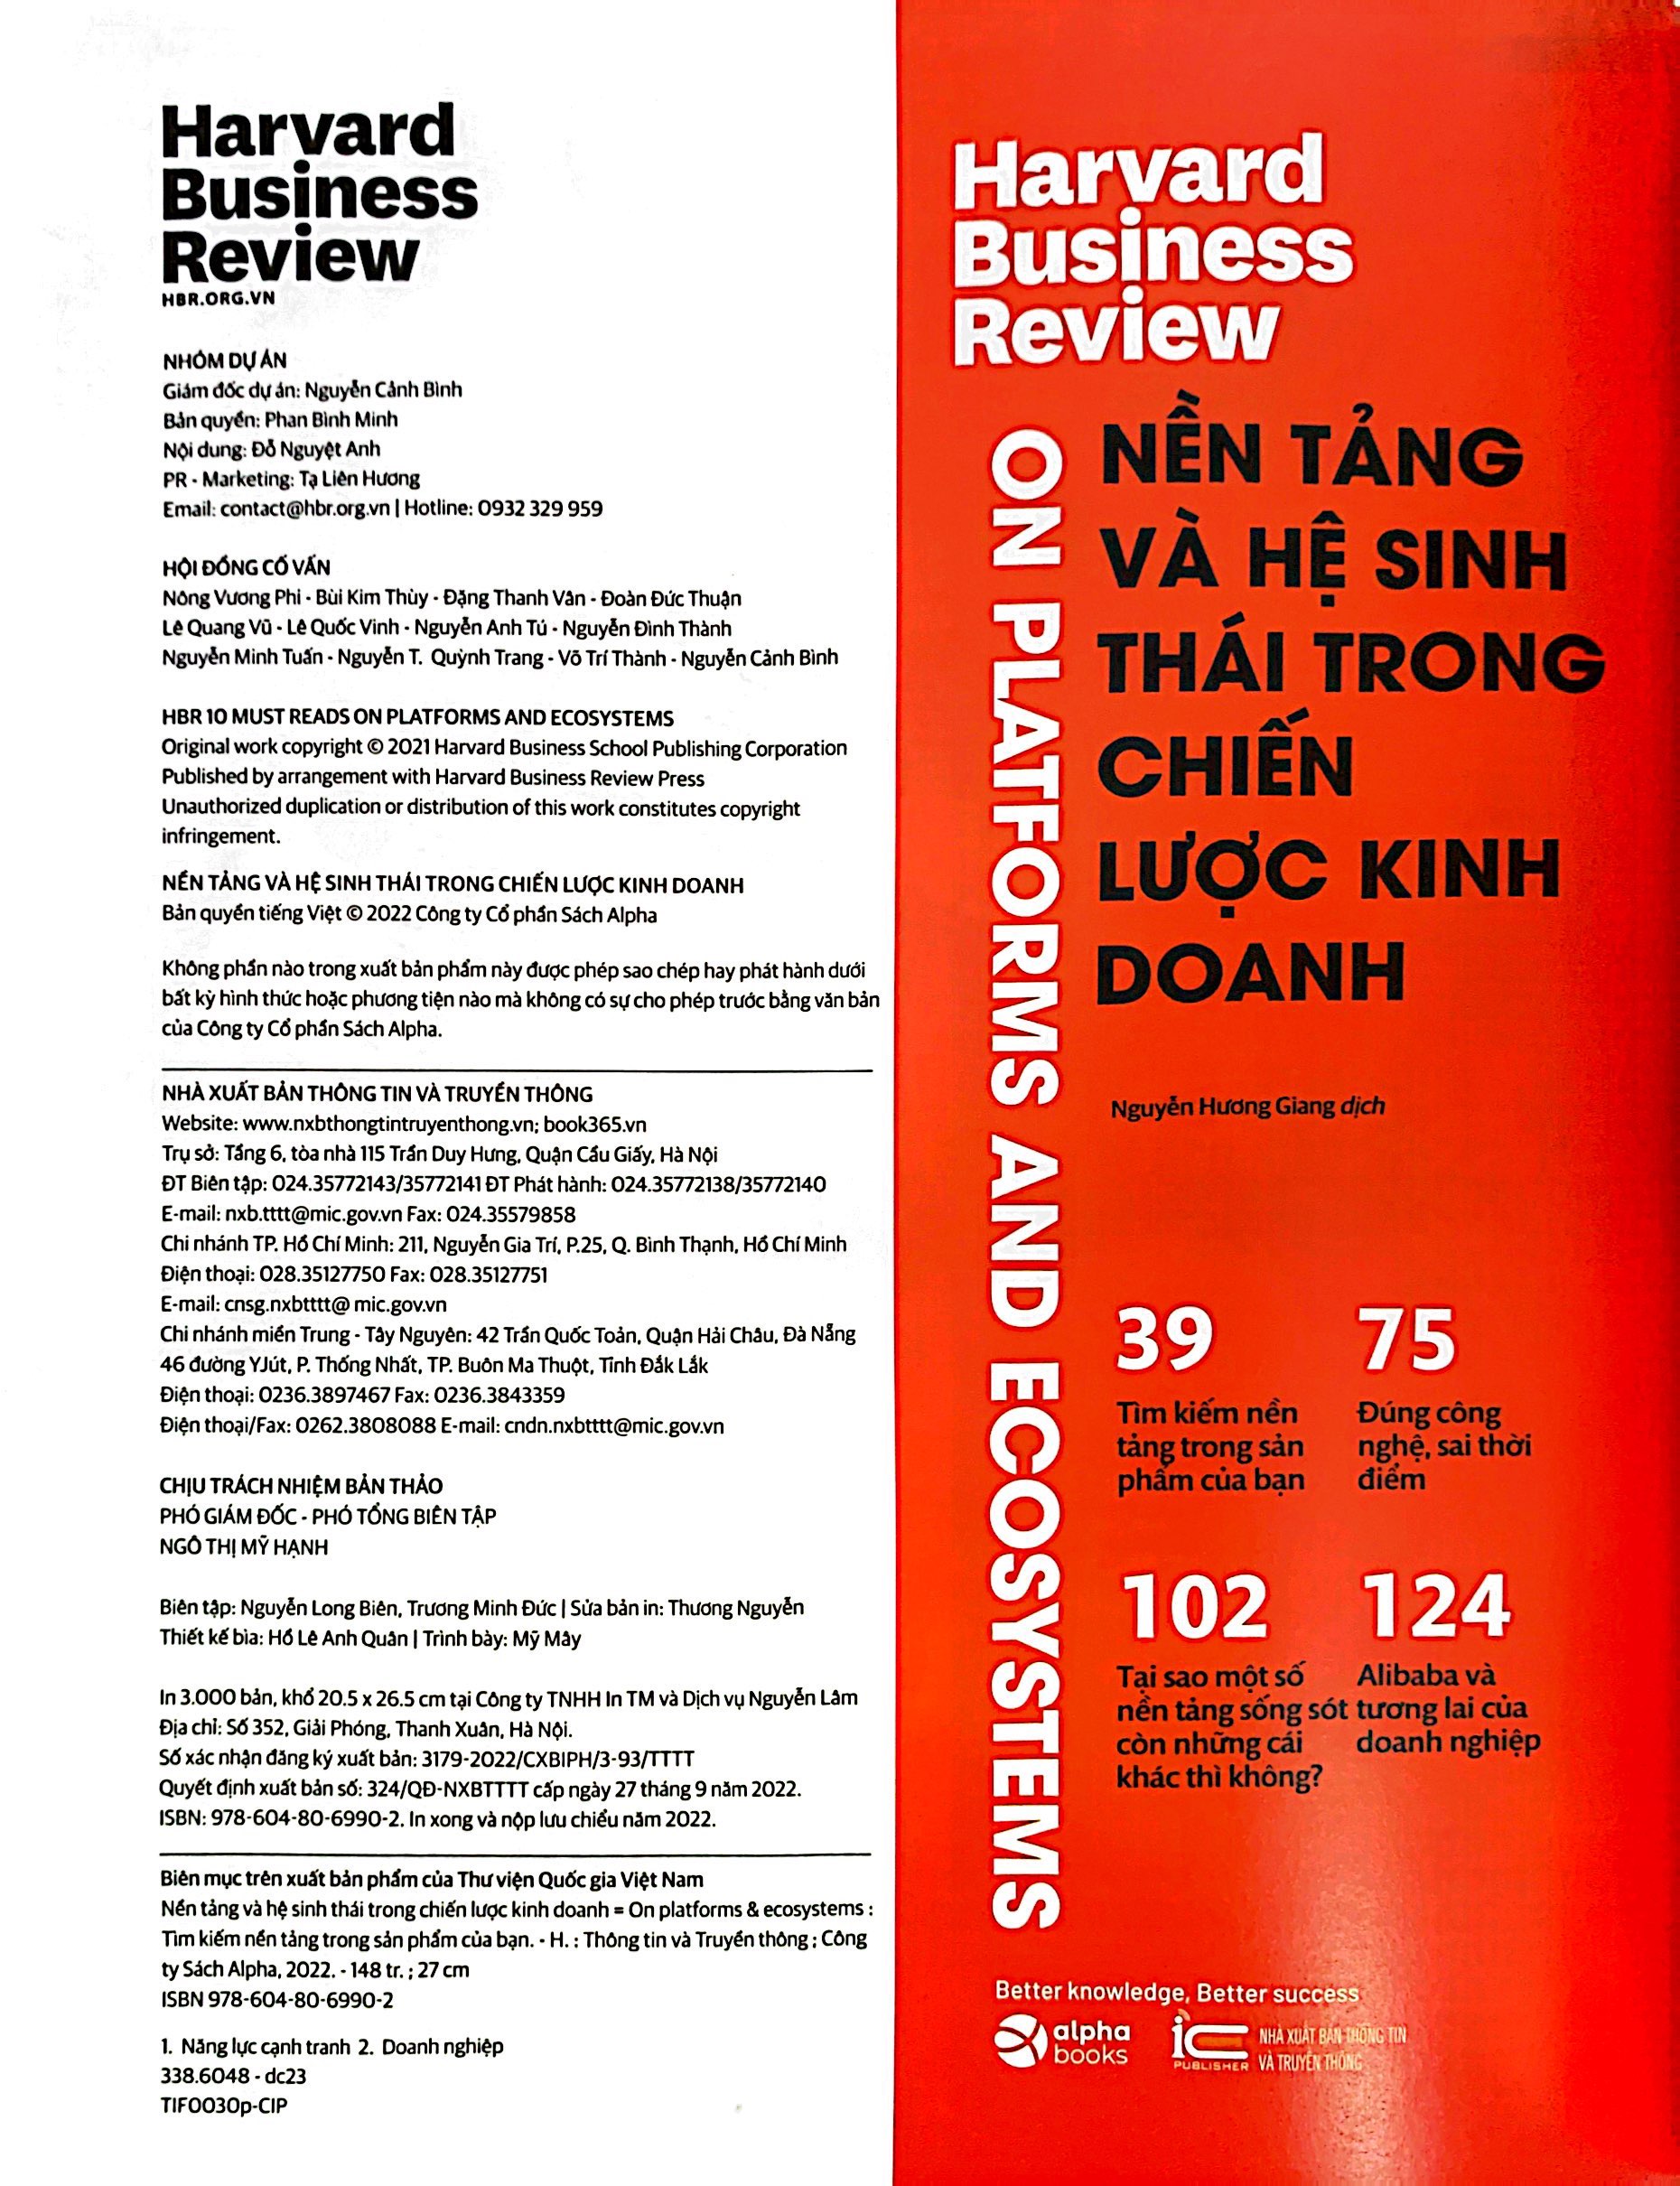 HBR On - Nền Tảng Và Hệ Sinh Thái Trong Chiến Lược Kinh Doanh PDF